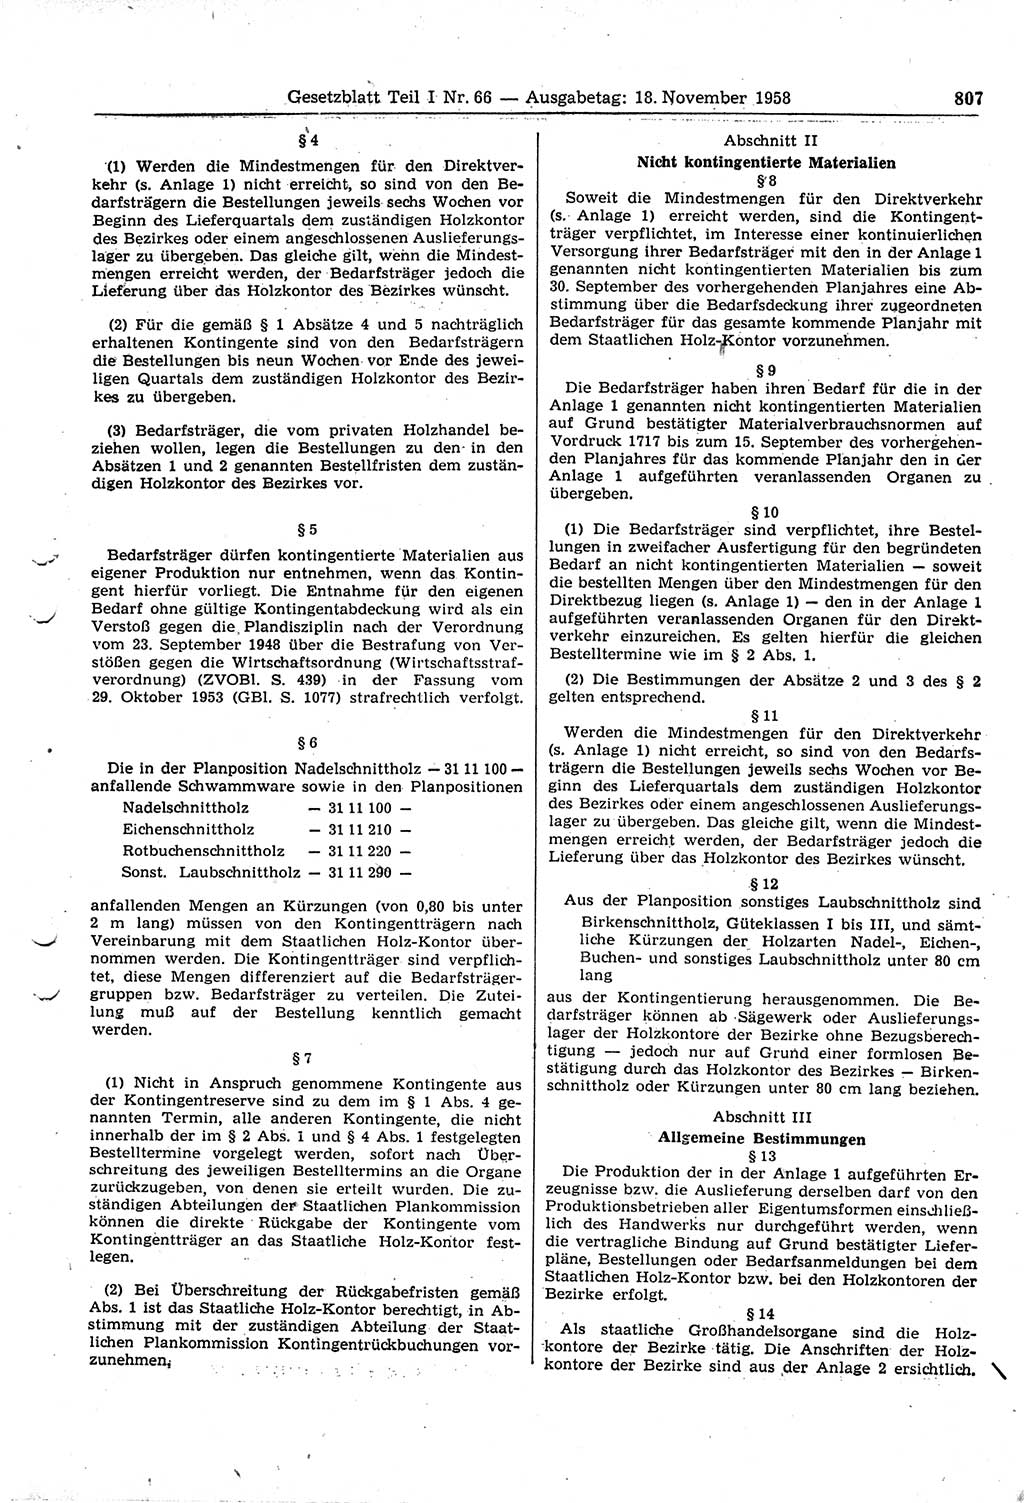 Gesetzblatt (GBl.) der Deutschen Demokratischen Republik (DDR) Teil Ⅰ 1958, Seite 807 (GBl. DDR Ⅰ 1958, S. 807)